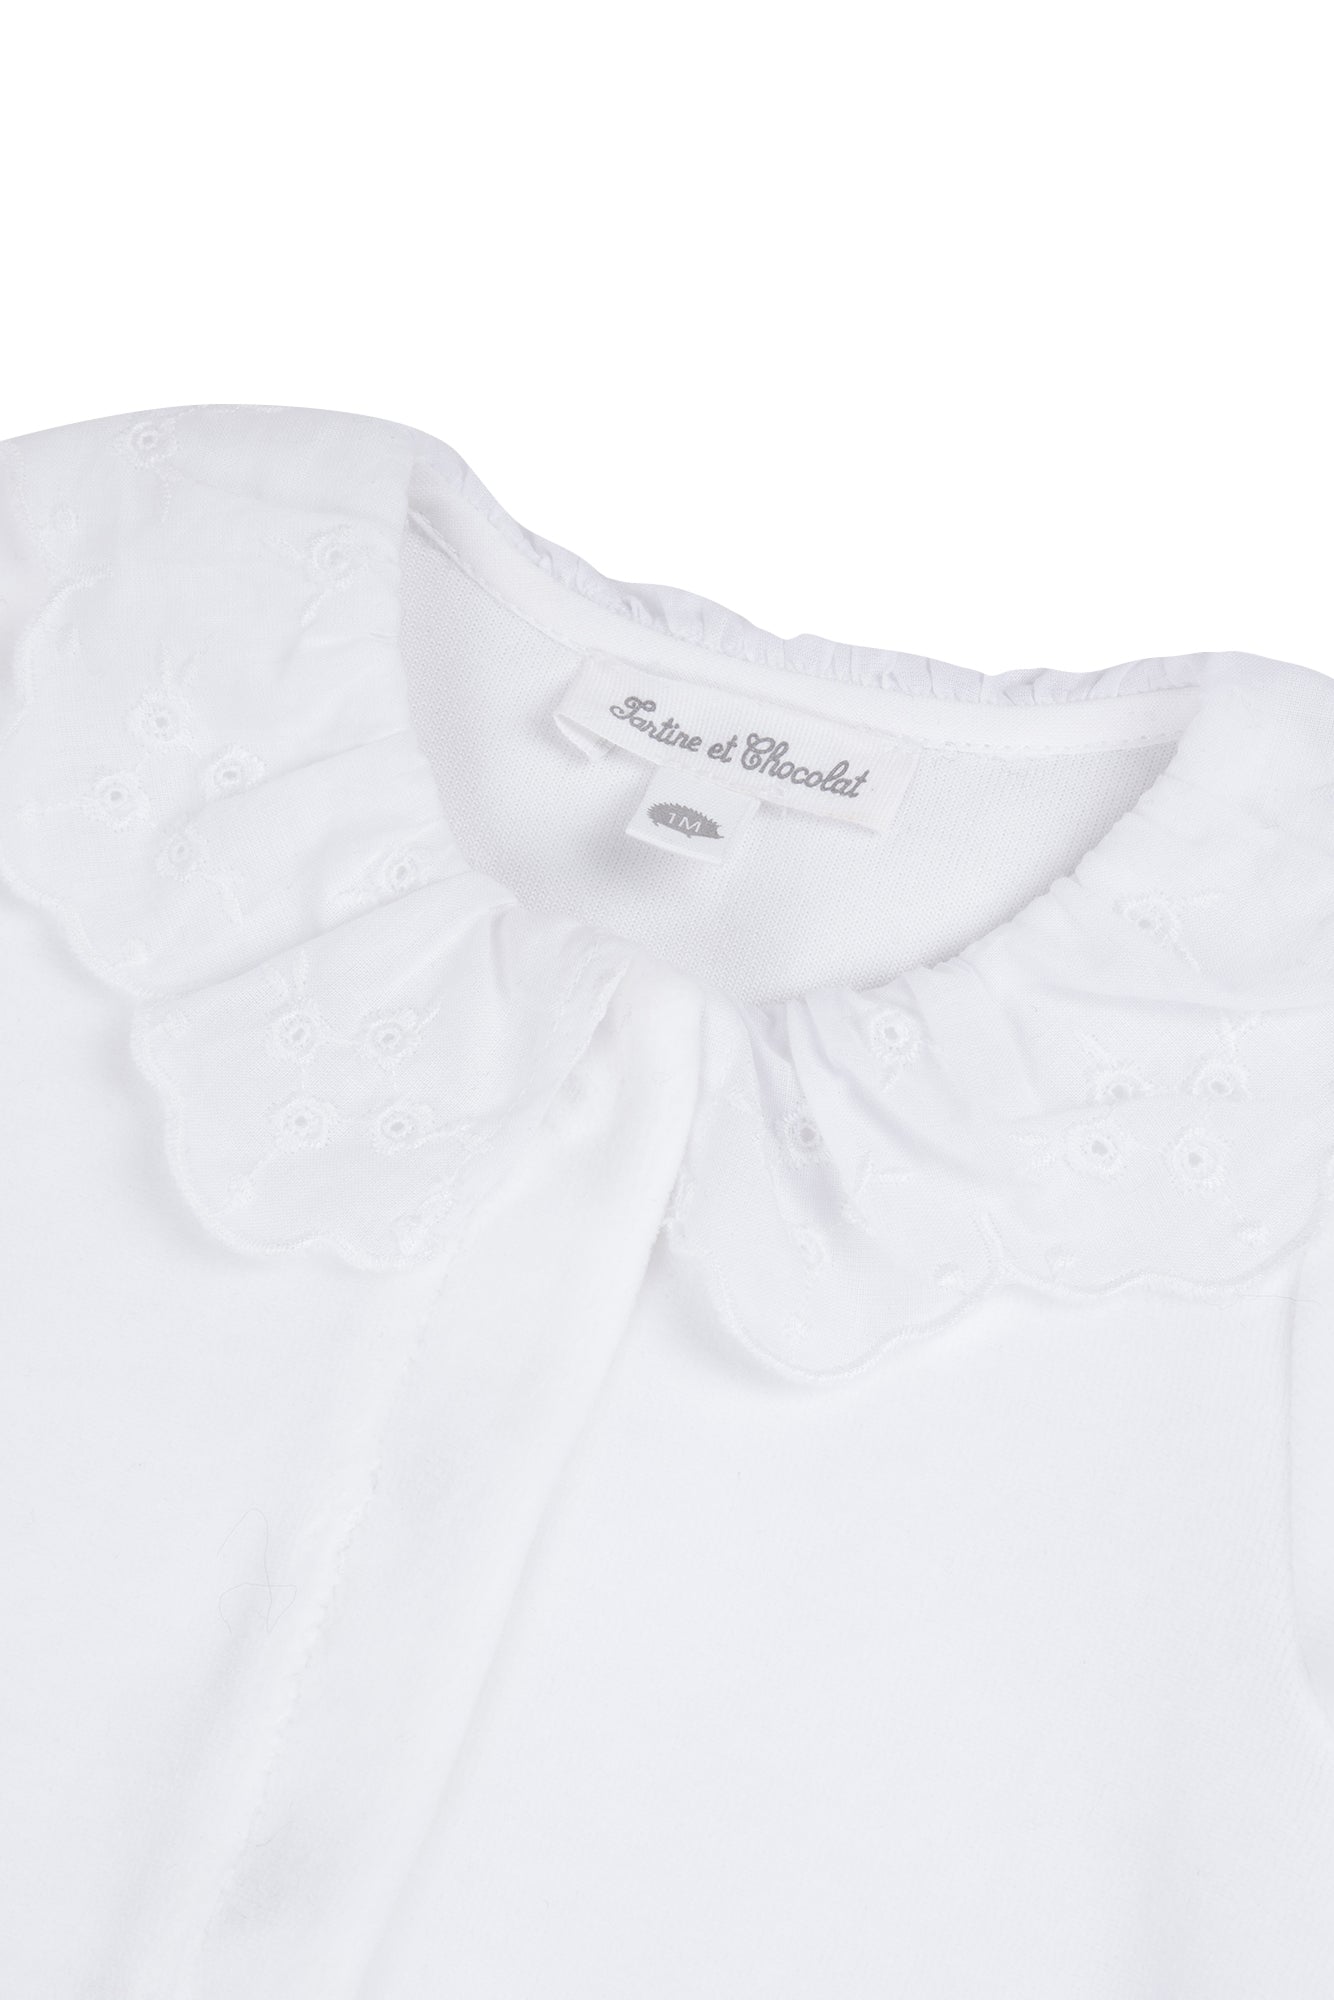 Pyjamas - White Velvet Collar Embroidered White / 3M